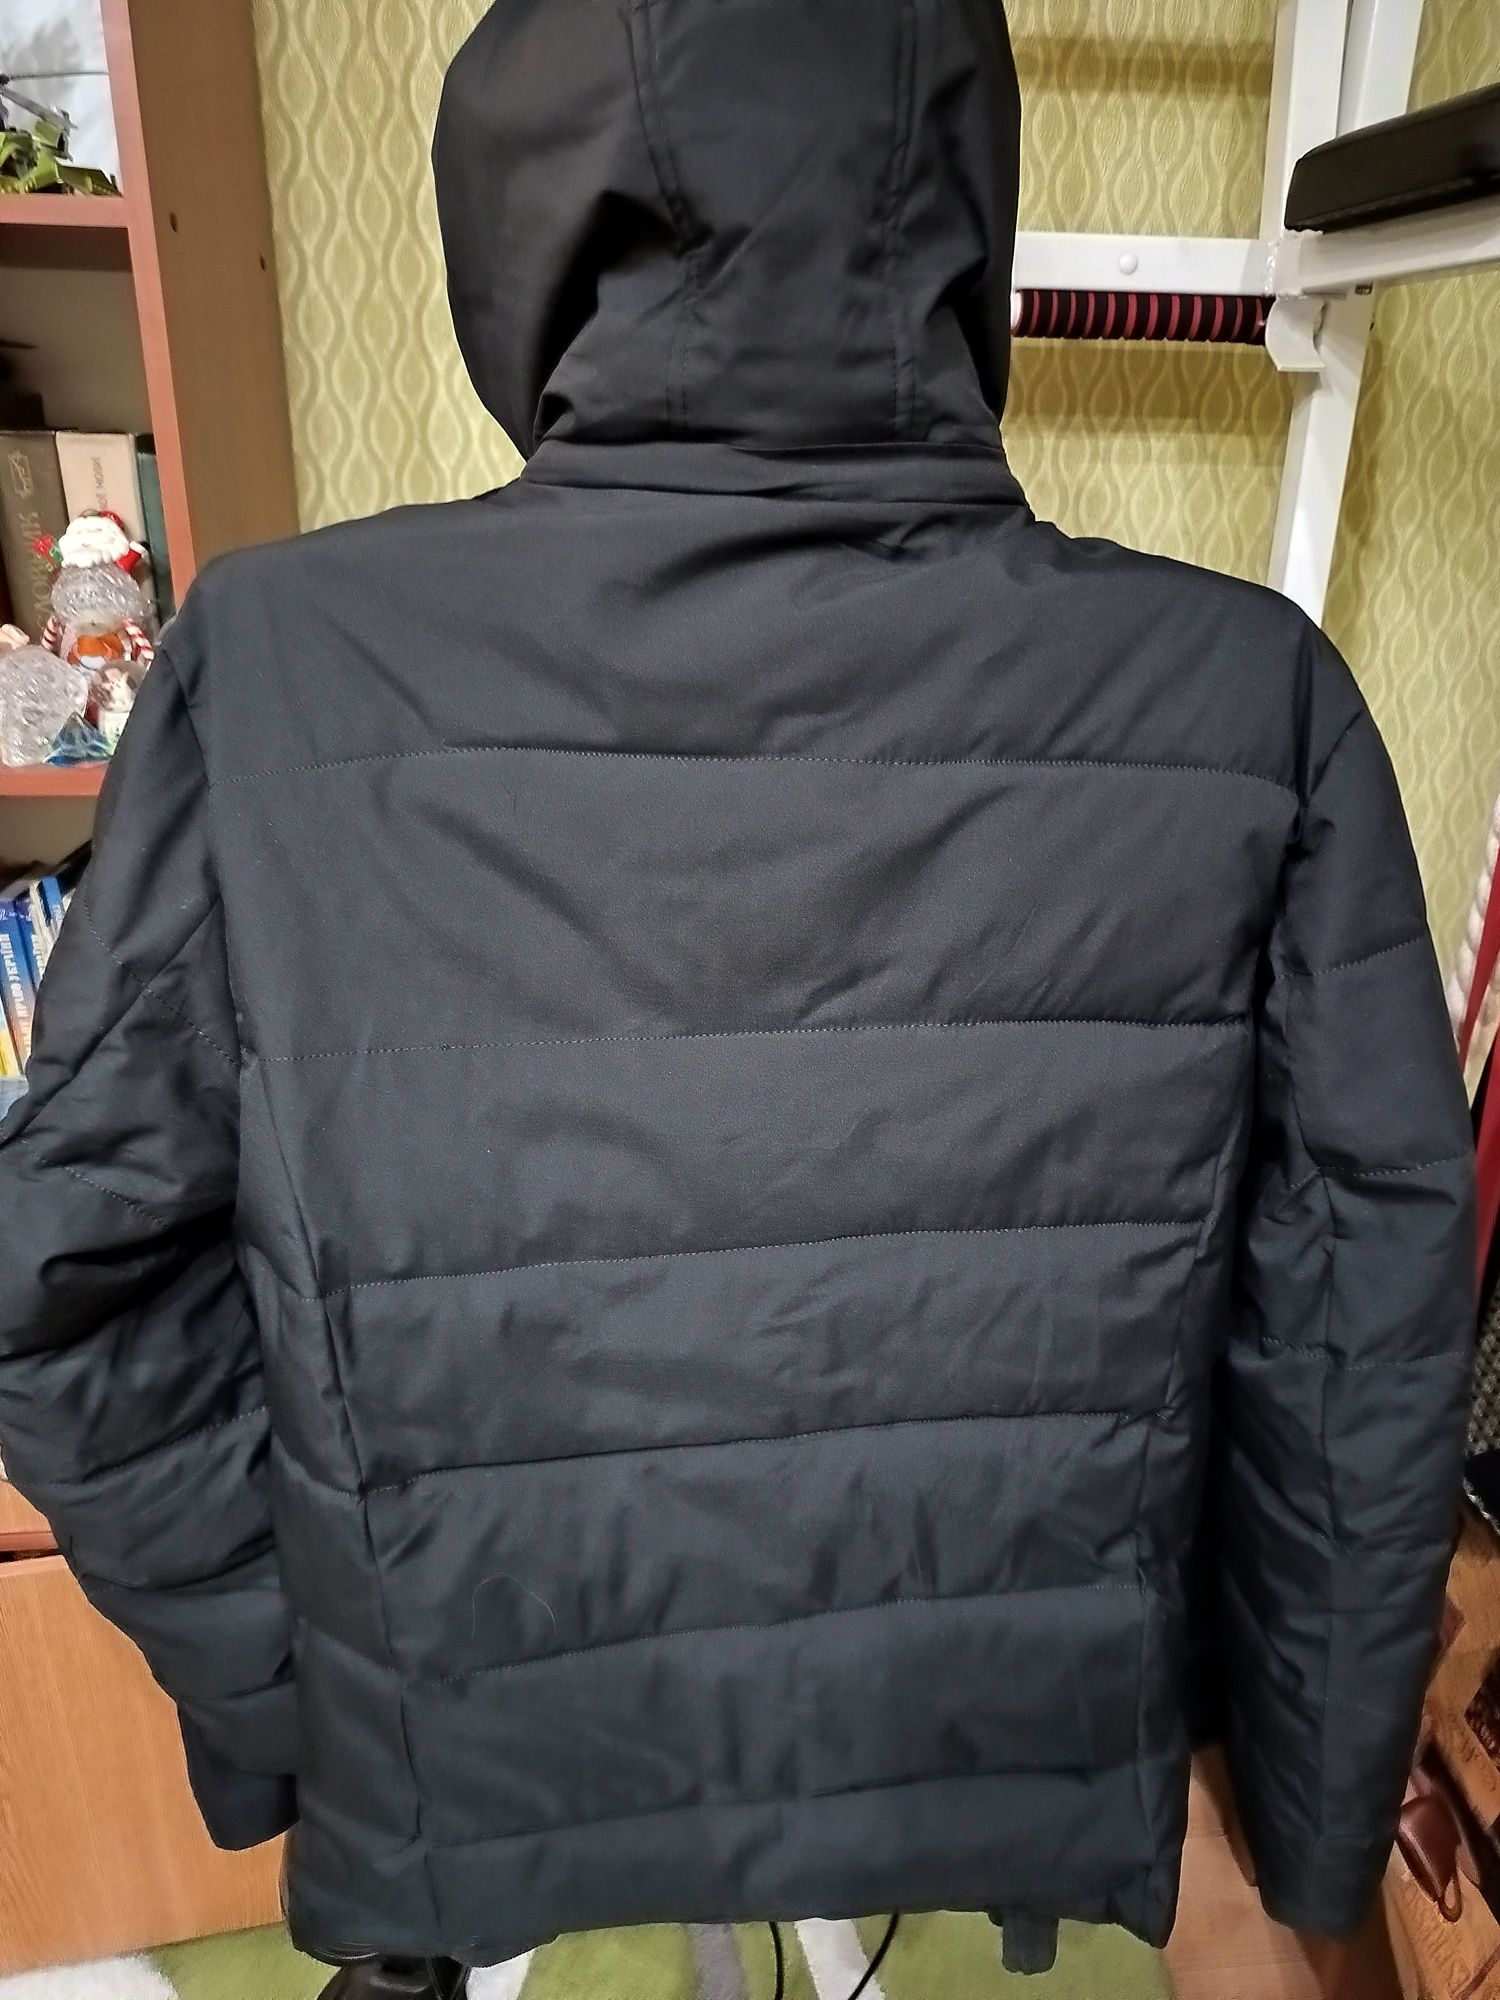 Продам куртку " Риma" размер 52, черного цвета.